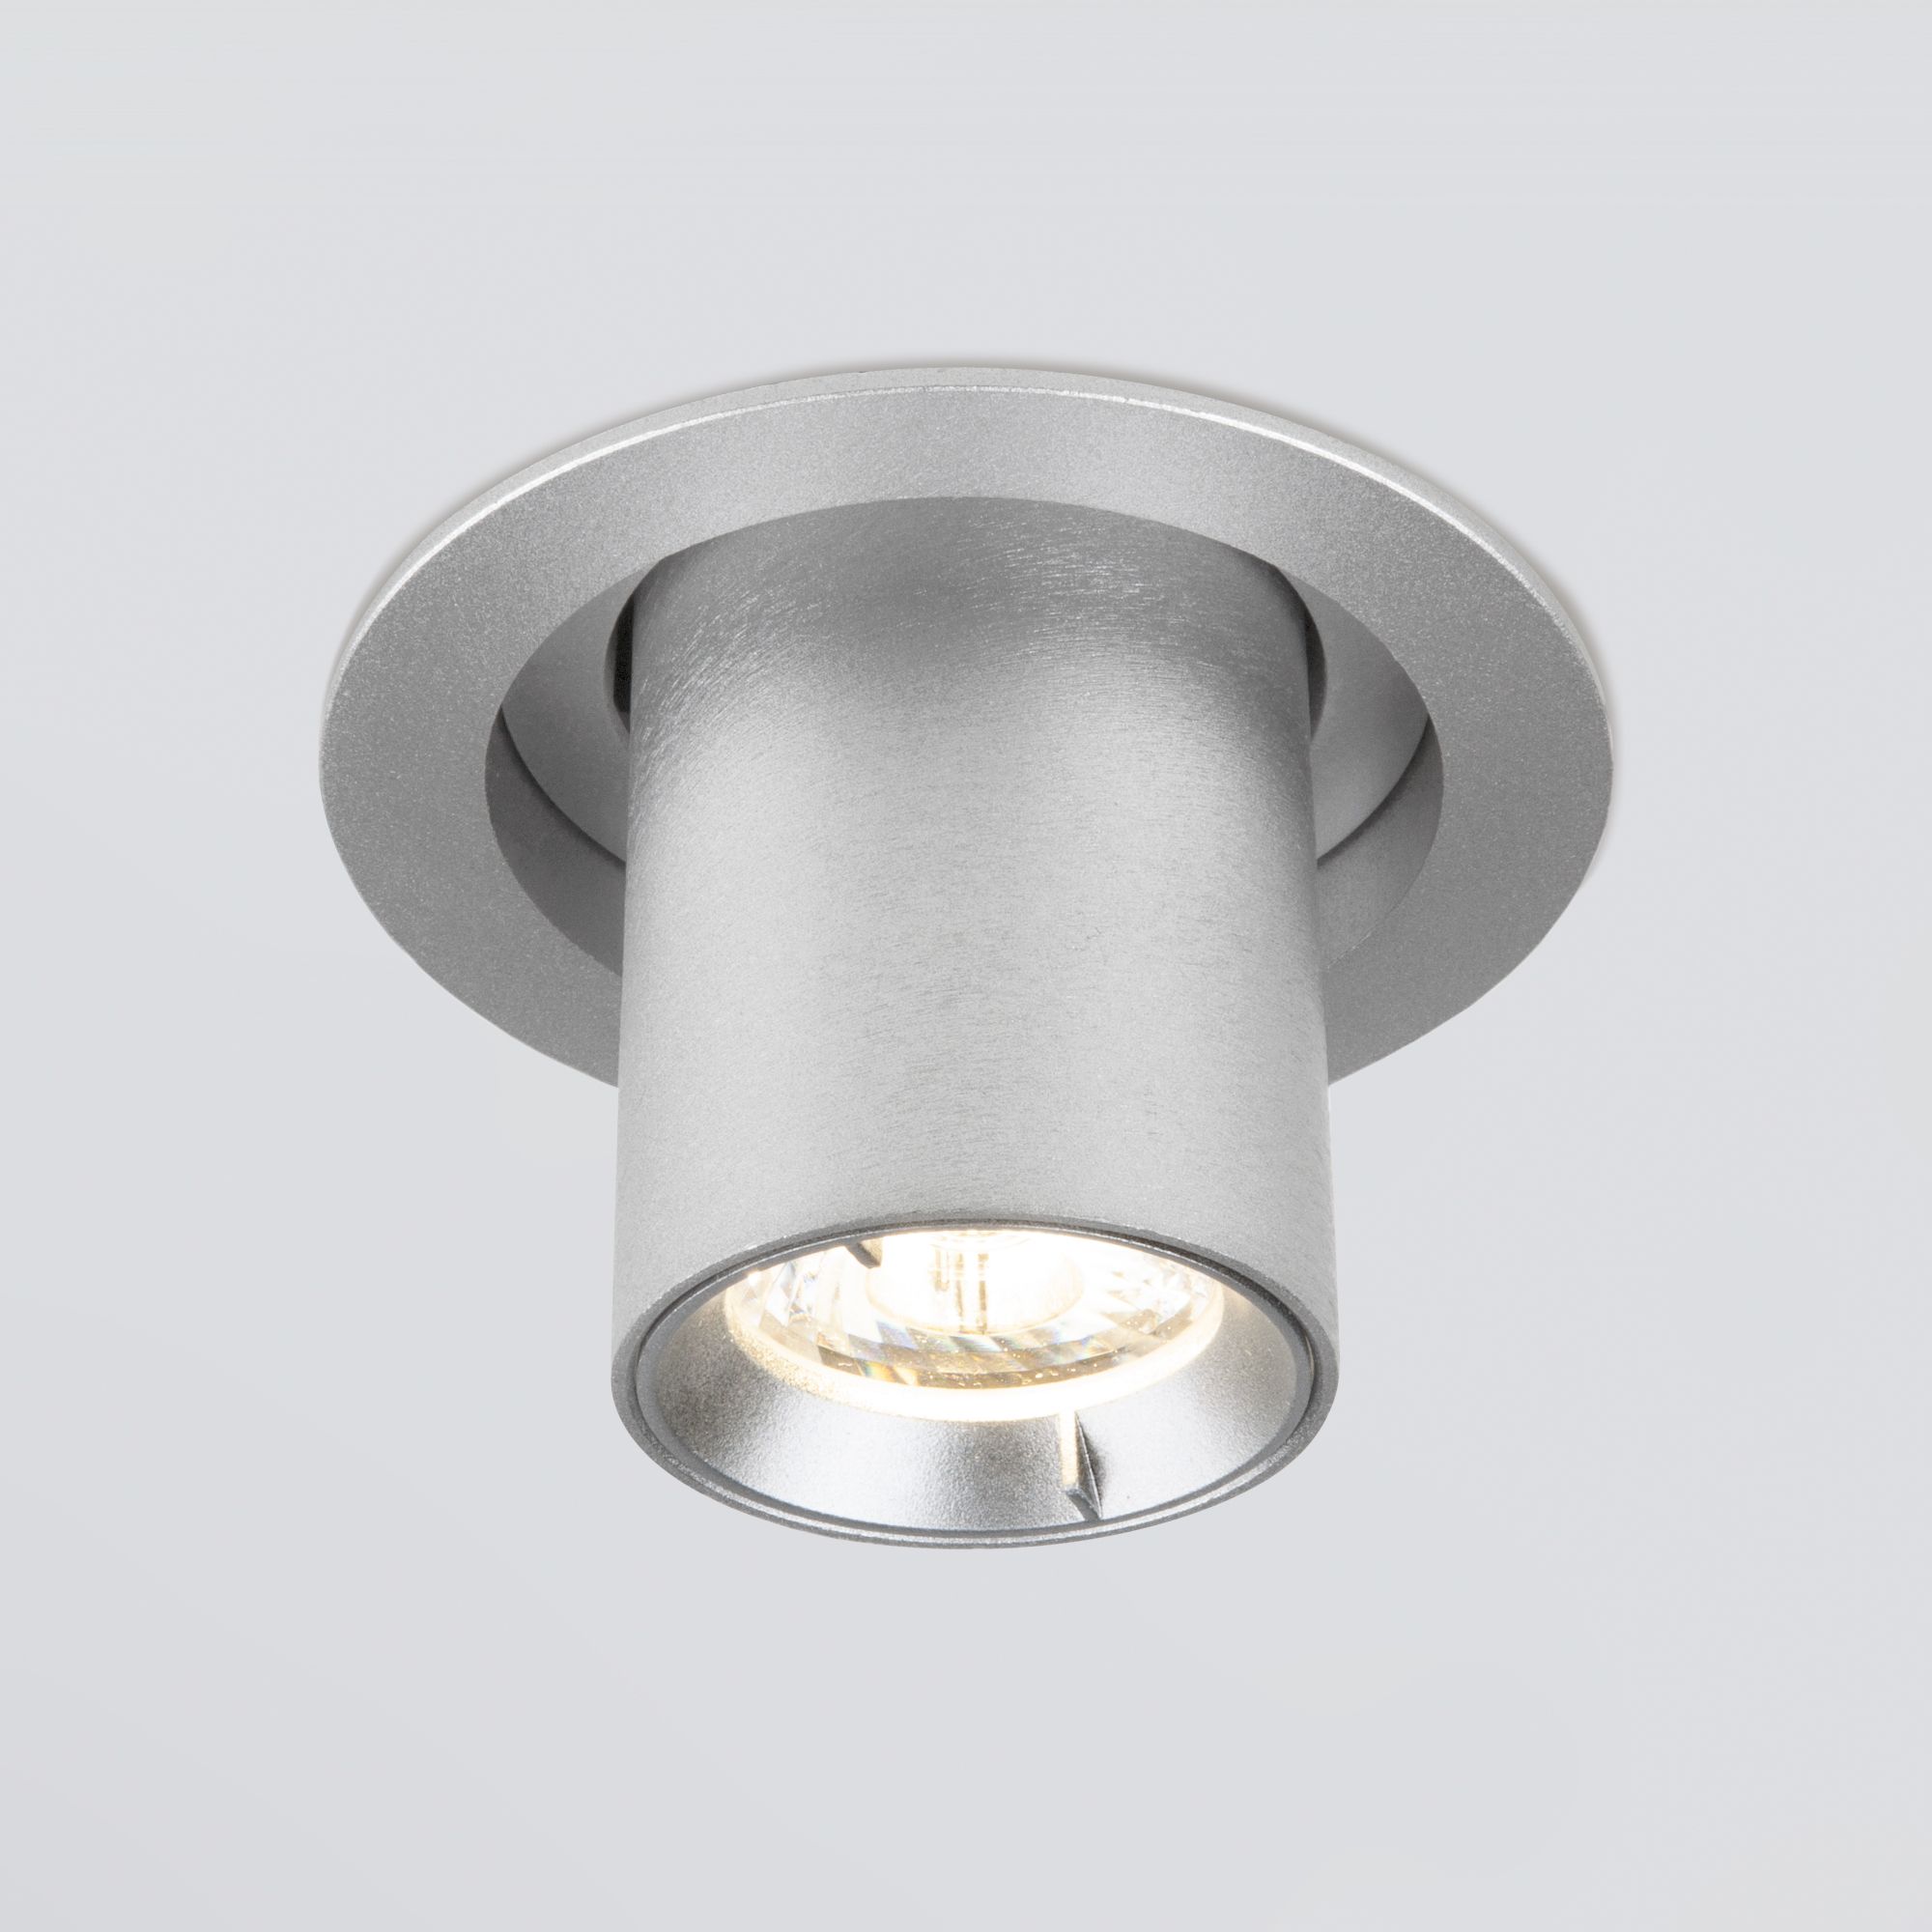 Встраиваемый точечный светодиодный светильник Pispa 10W 4200K серебро 9917 LED